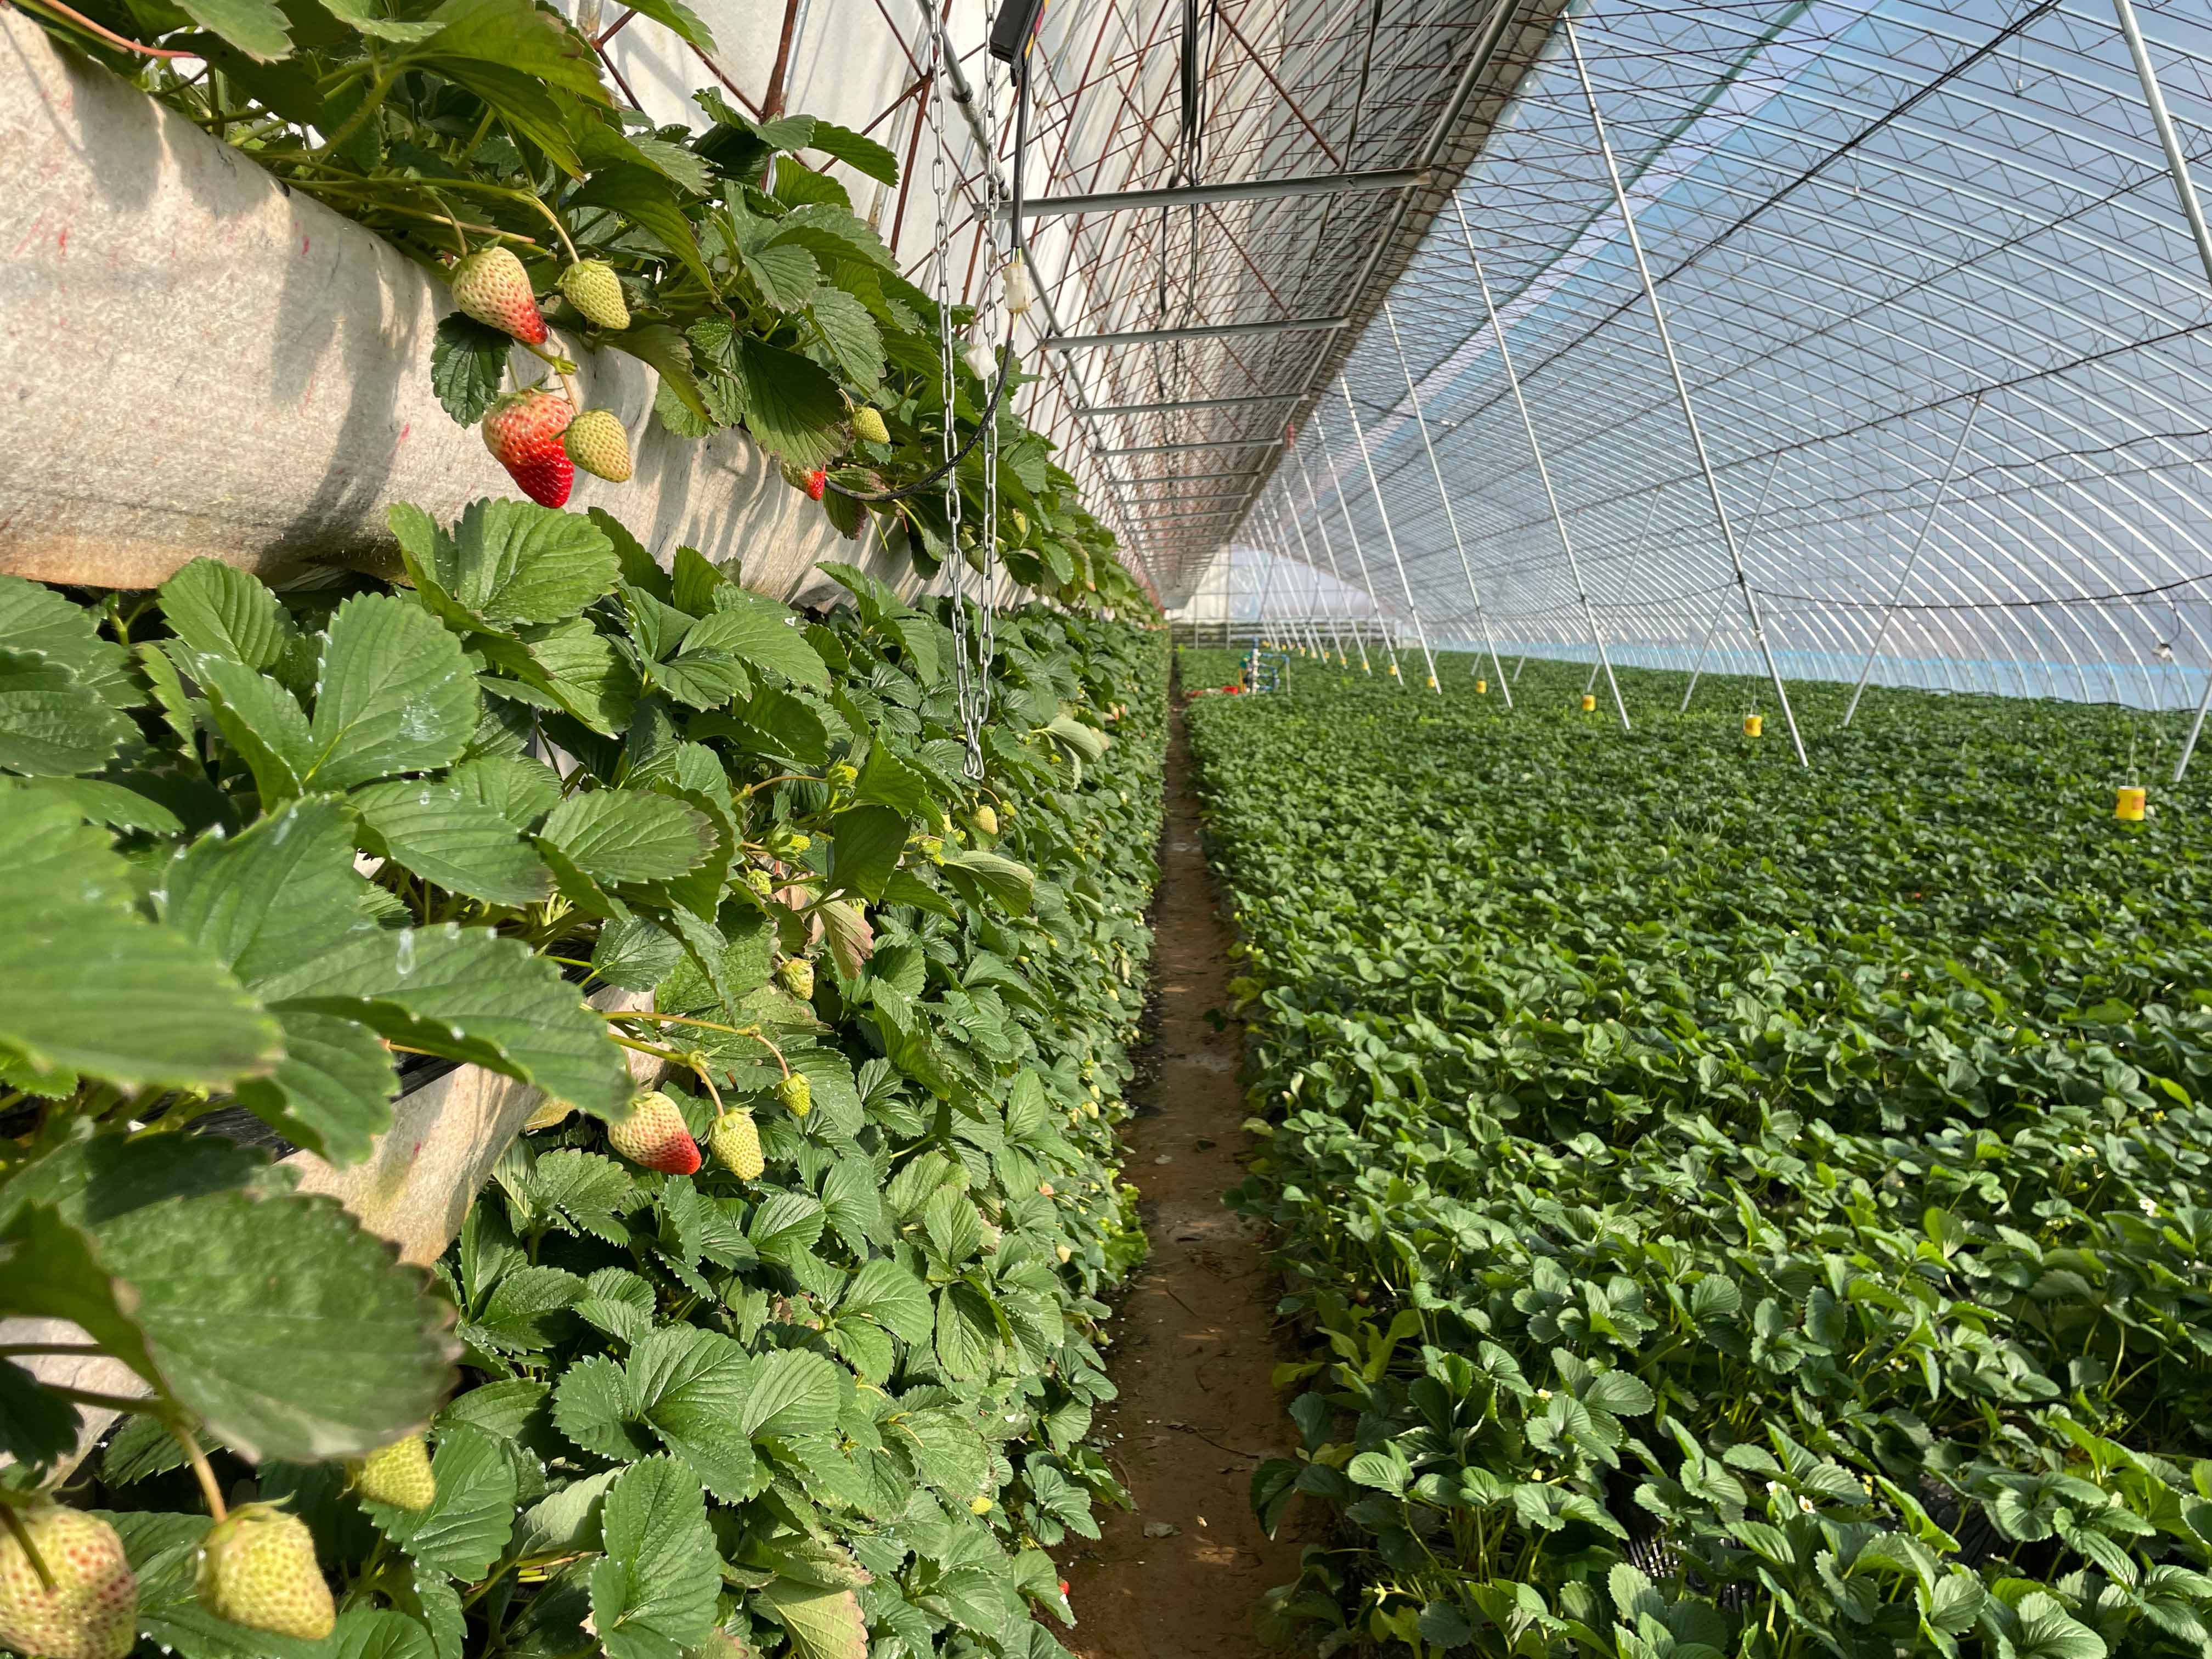 也有部分农户会在种植草莓的大棚内,把表层30厘米厚的土重新挖出,换上